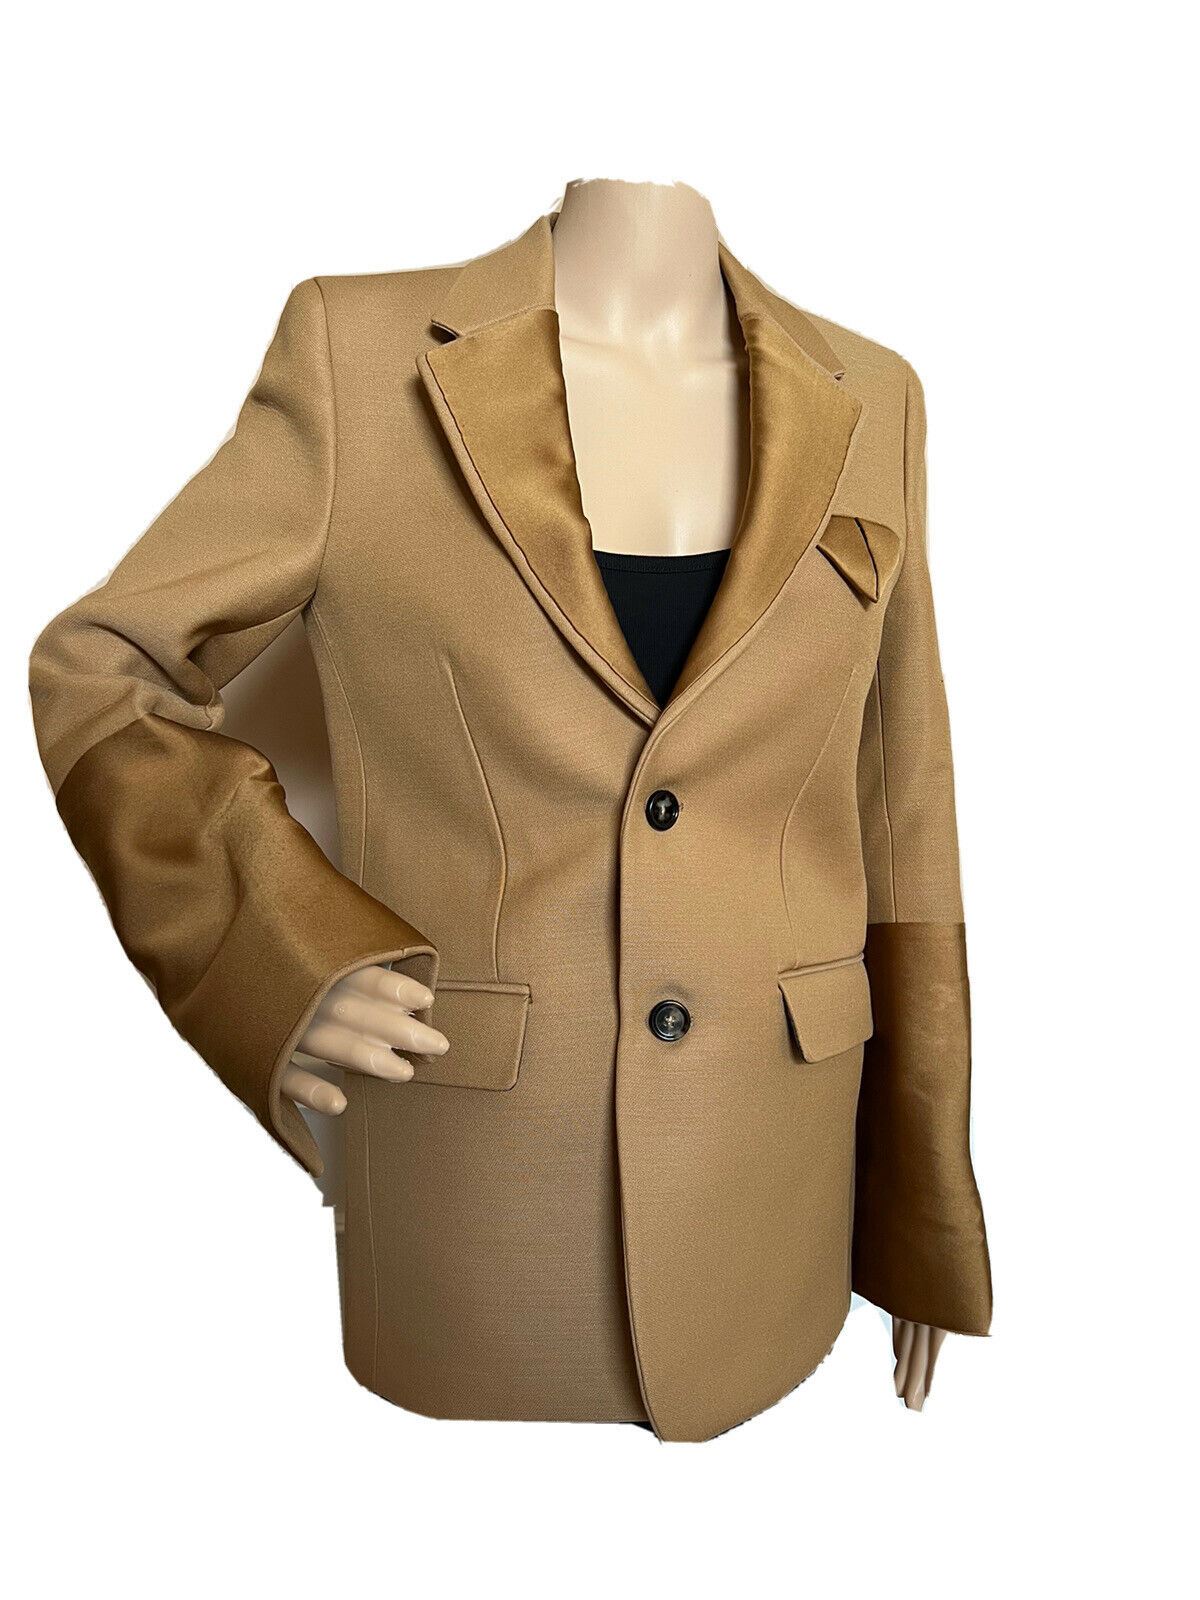 СЗТ 2880 долларов США Bottega Veneta Женский однобортный пиджак светло-коричневого/карамельного цвета 42 США